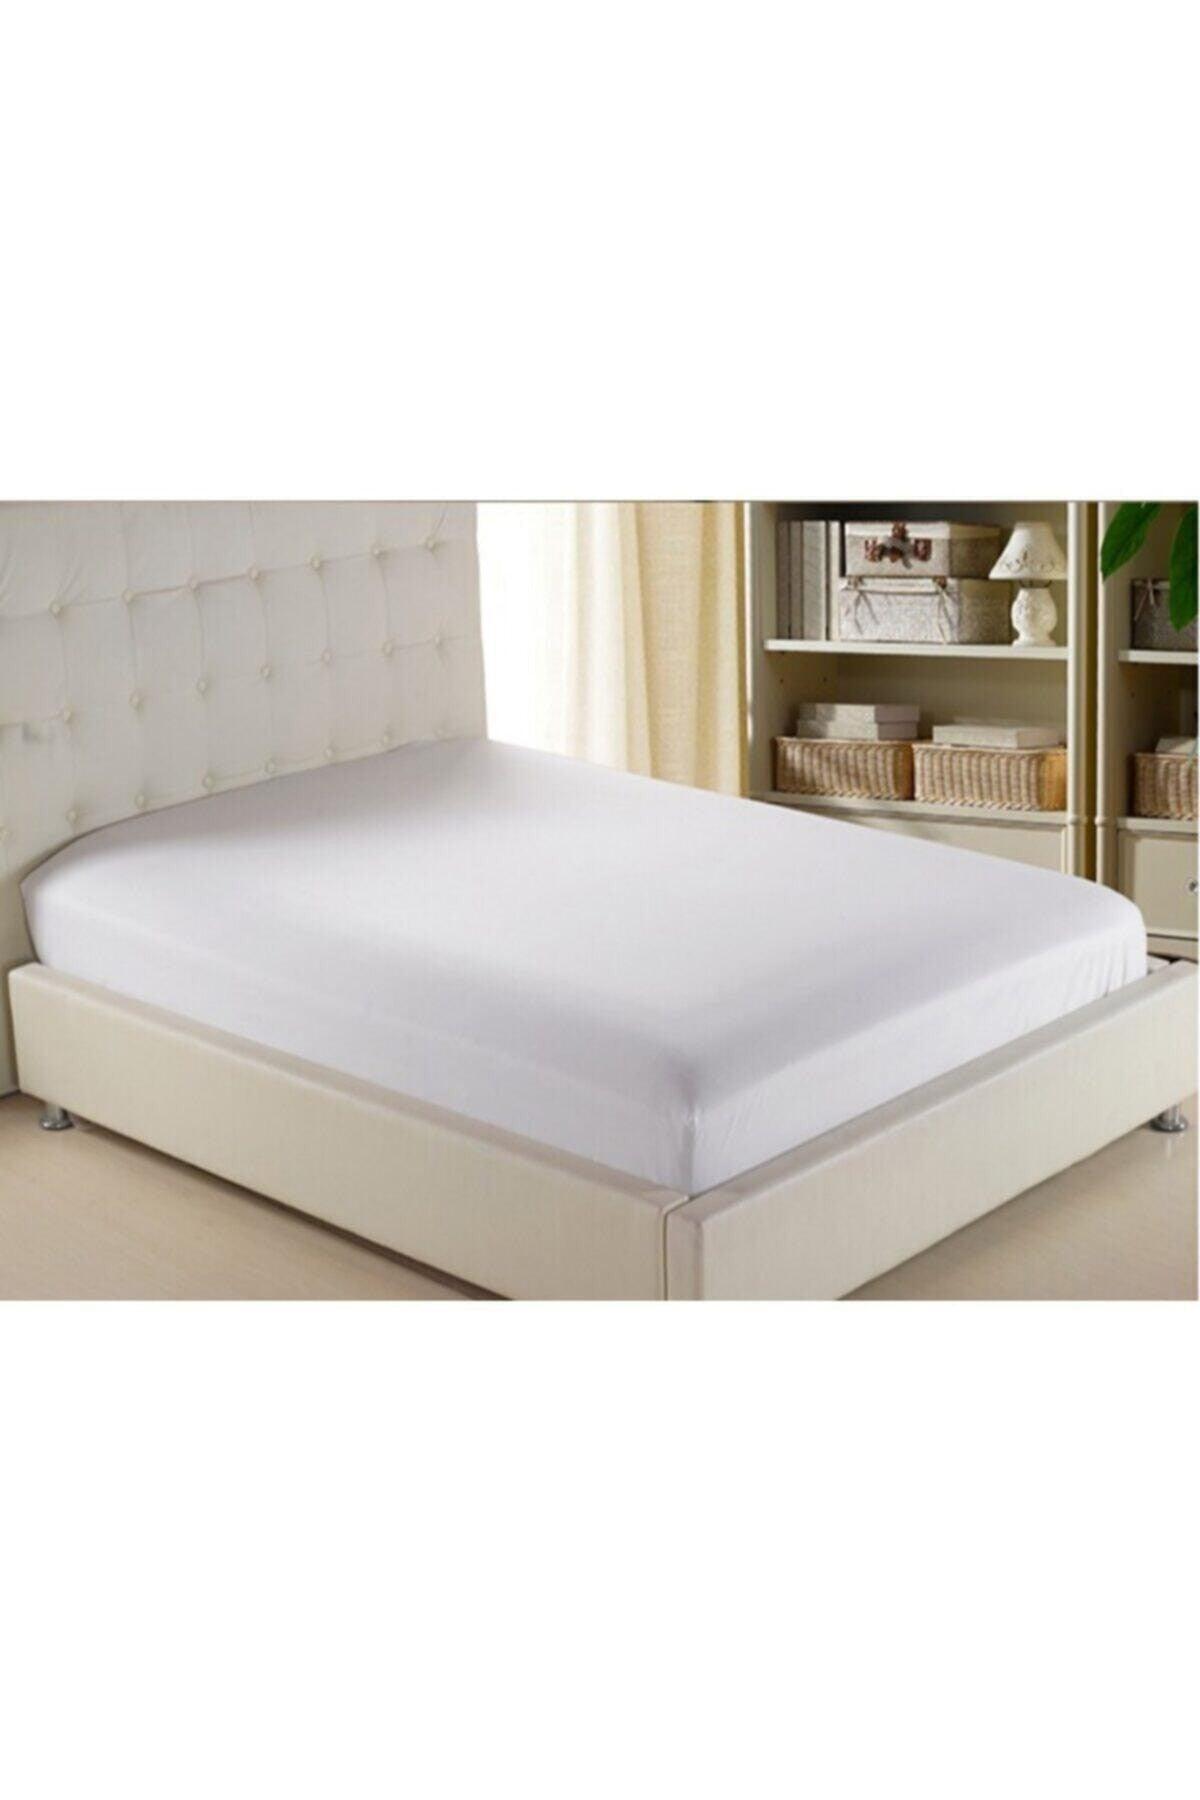 Mer-tim Combed Oversized Elastic Bed Sheet White 180*200 - Swordslife